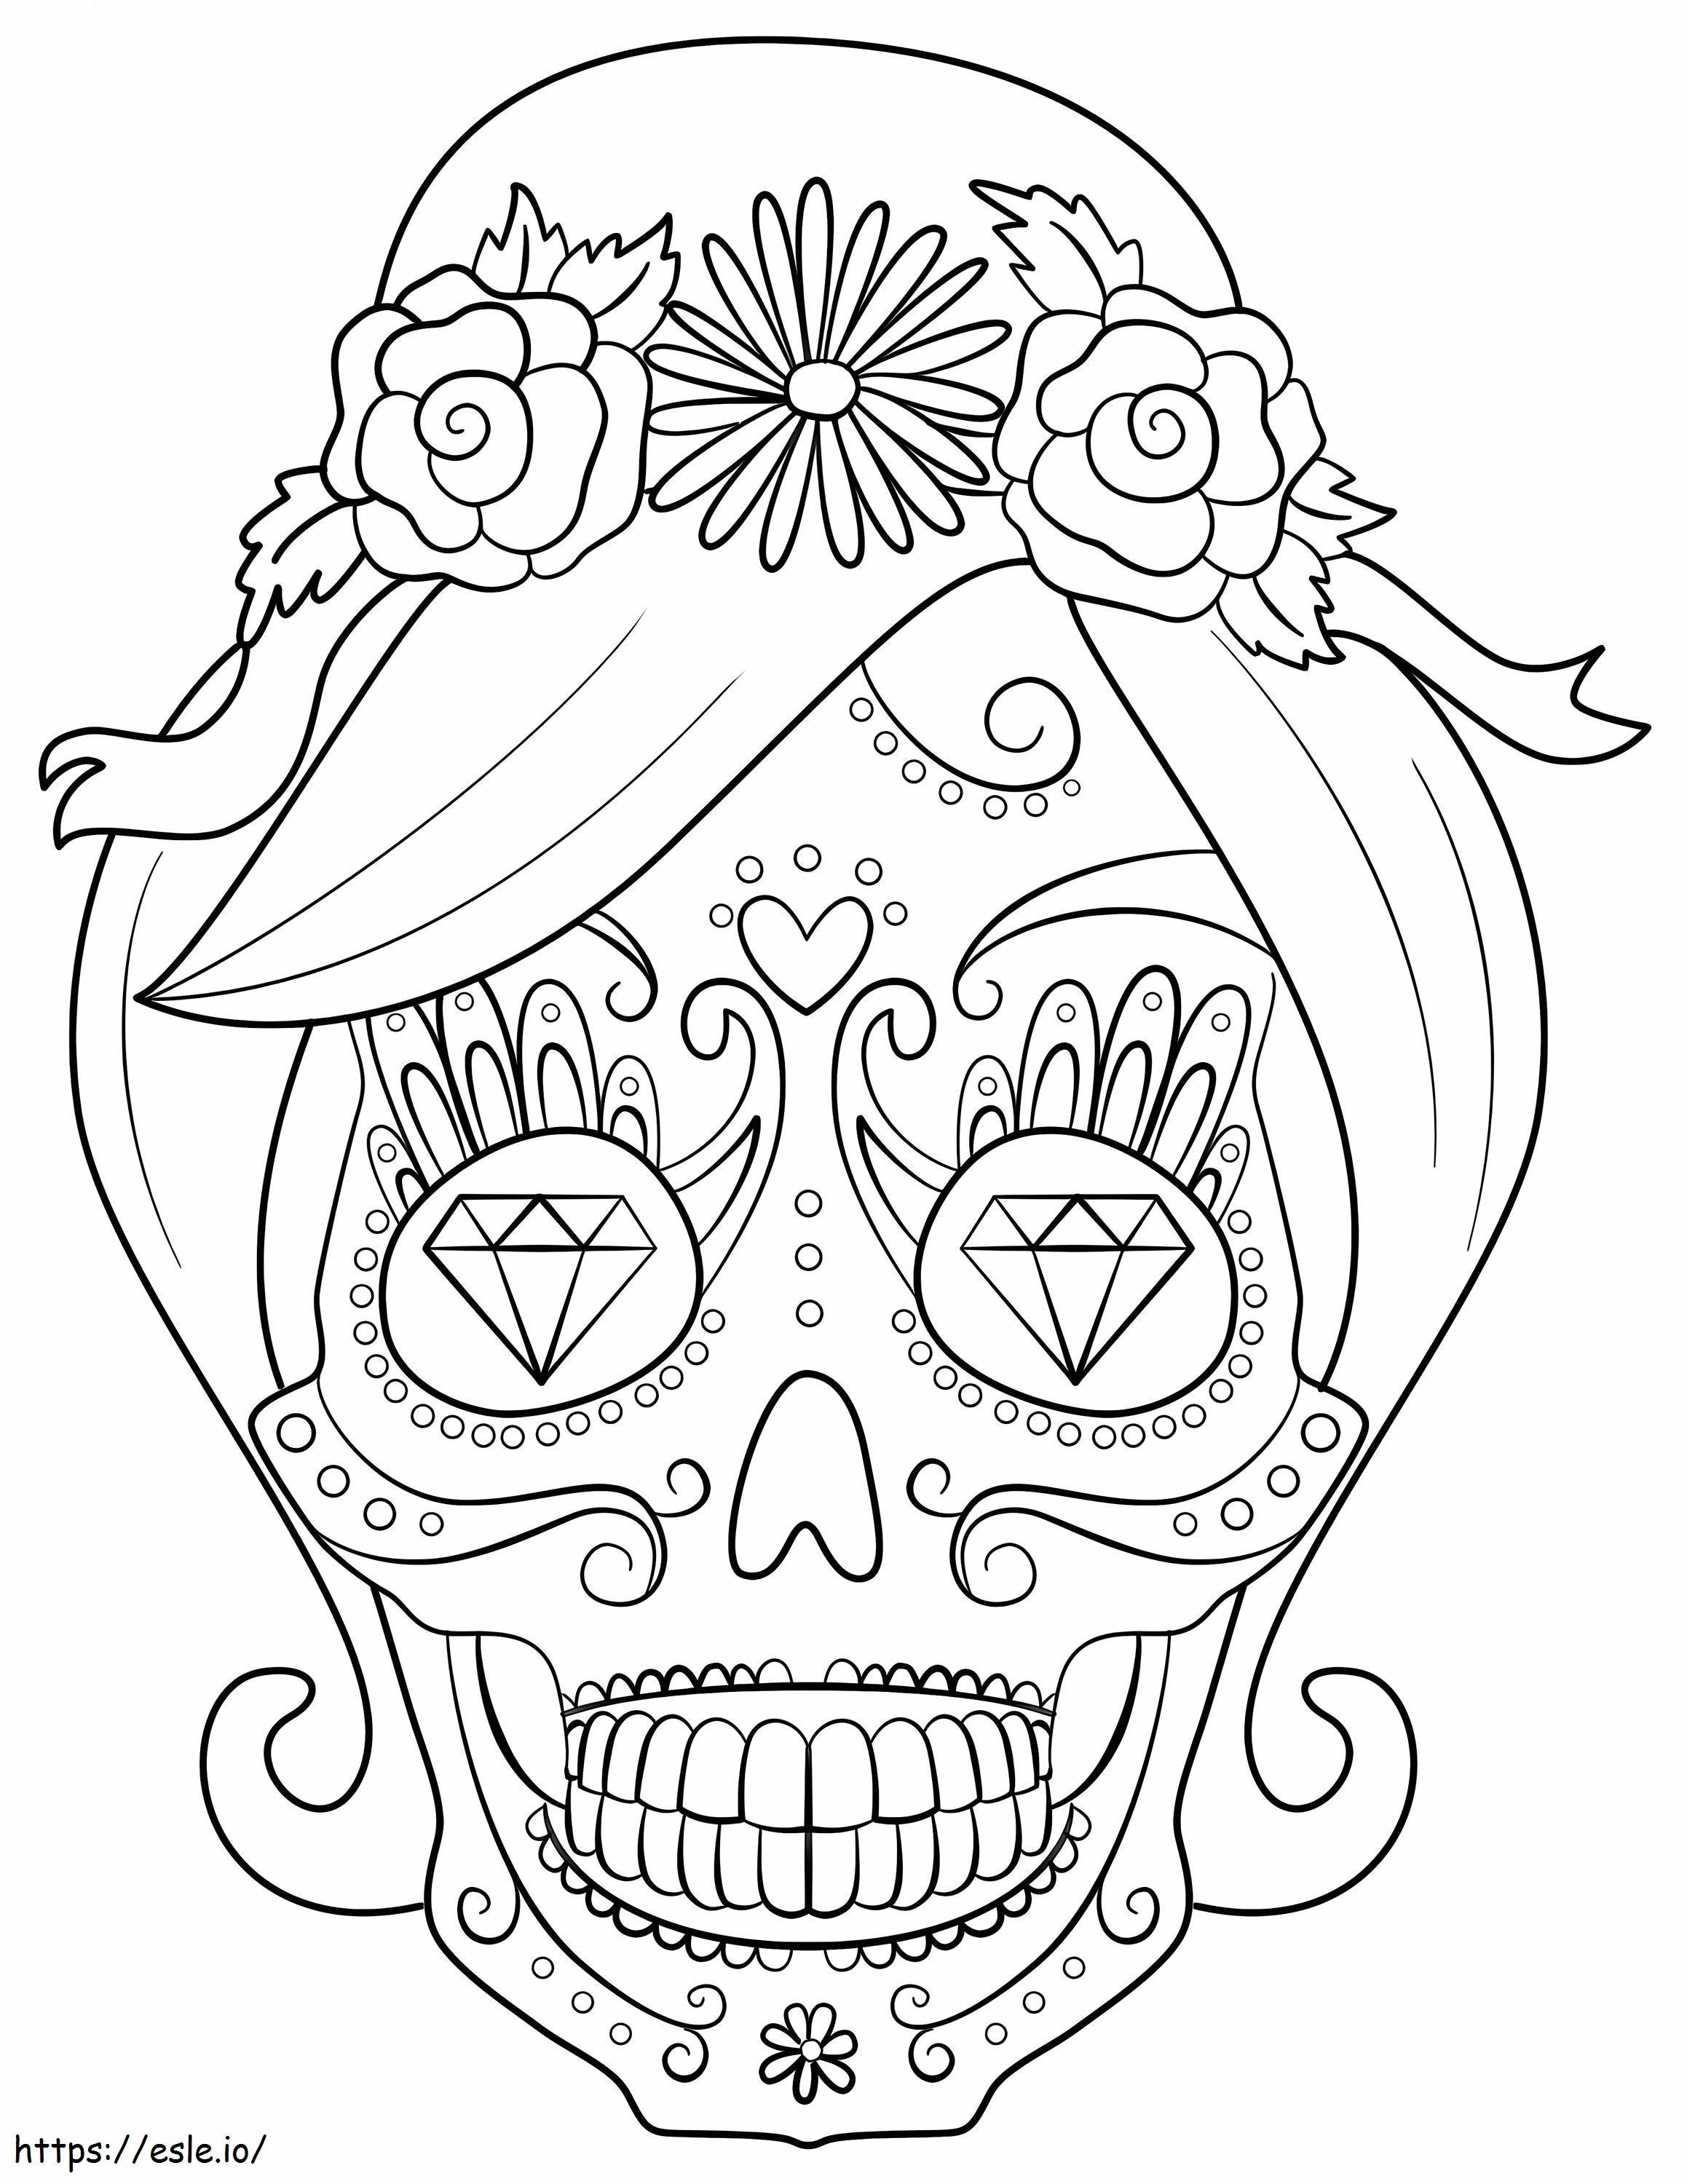 1577326724 Sugar Skull Woman coloring page